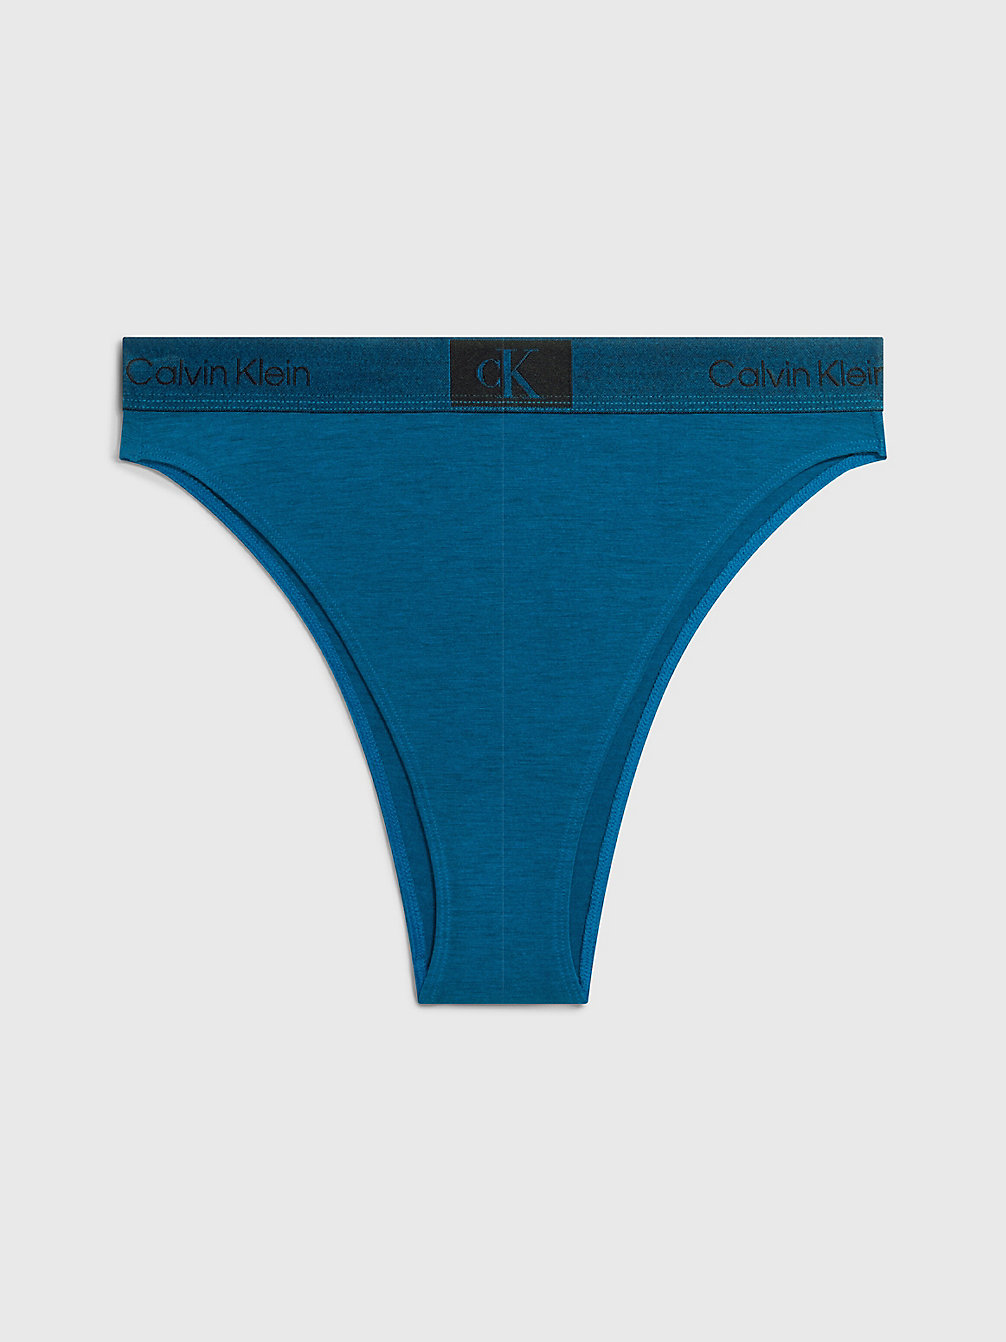 AMPLIFIED BLUE > Brazilian Slip Mit Hoher Taille - Ck96 > undefined Damen - Calvin Klein